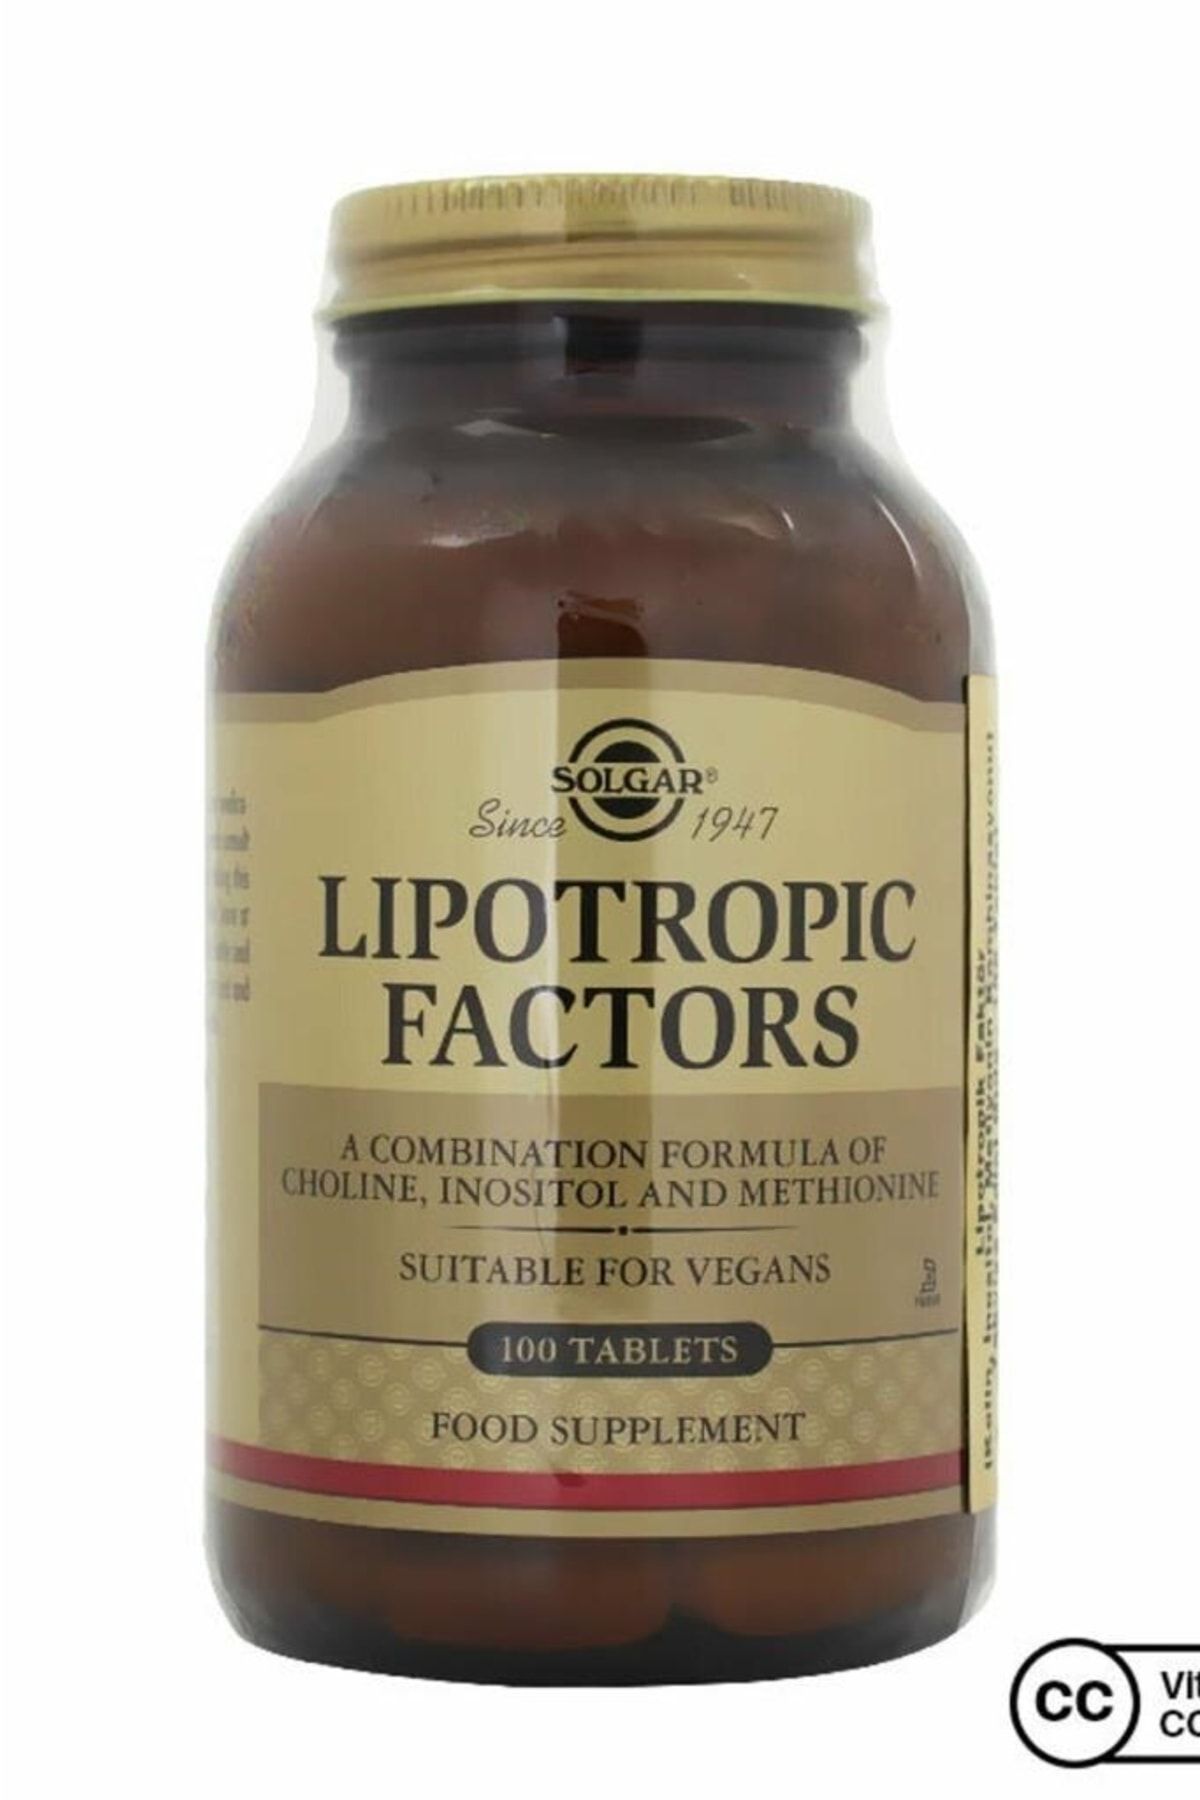 Solgar Lipotropic Factors 100 Tablet Vitamin